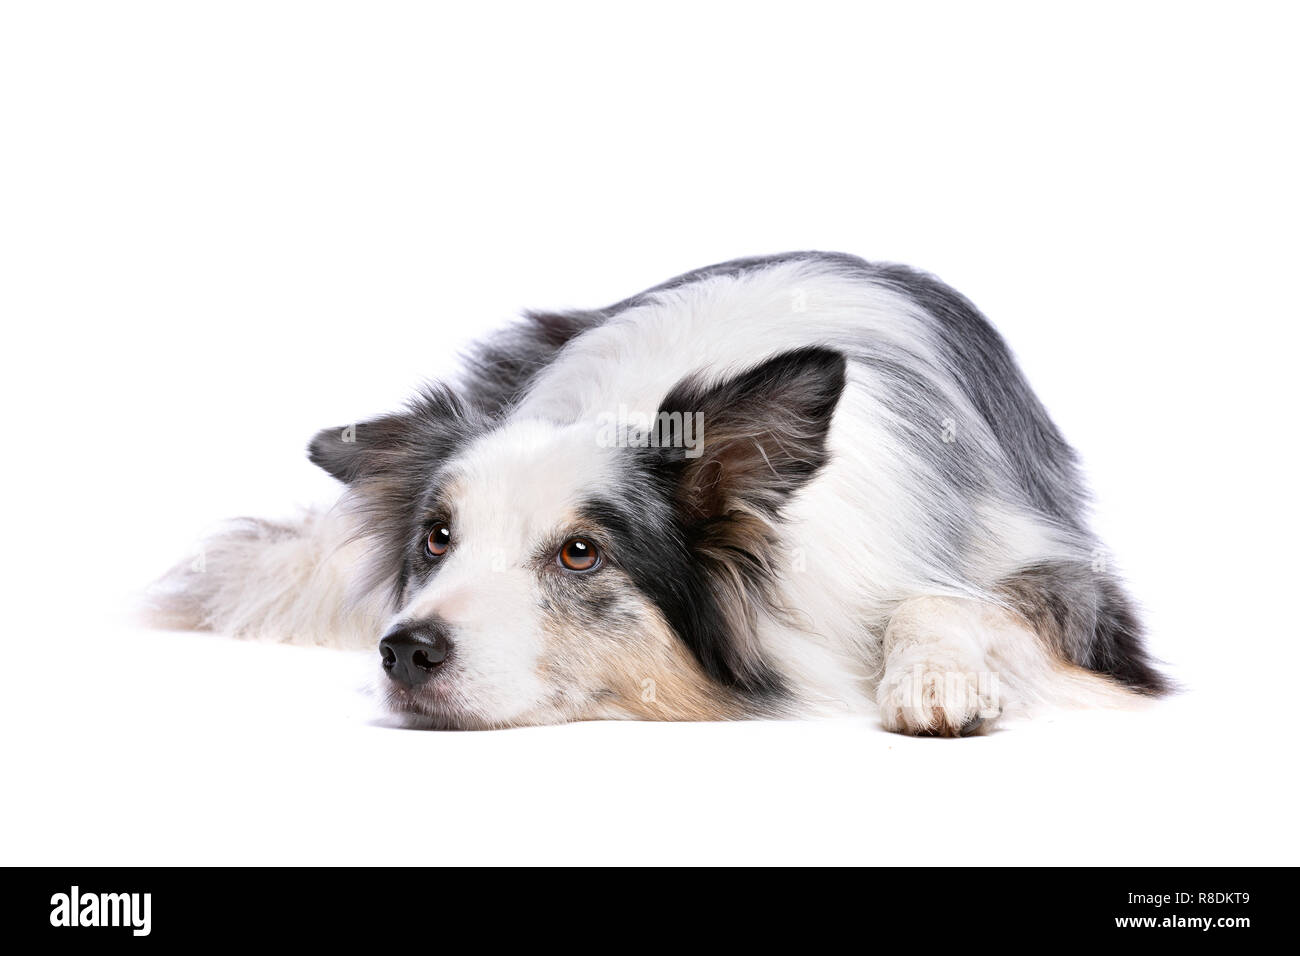 Vieux Merle border collie dog devant un fond blanc Banque D'Images